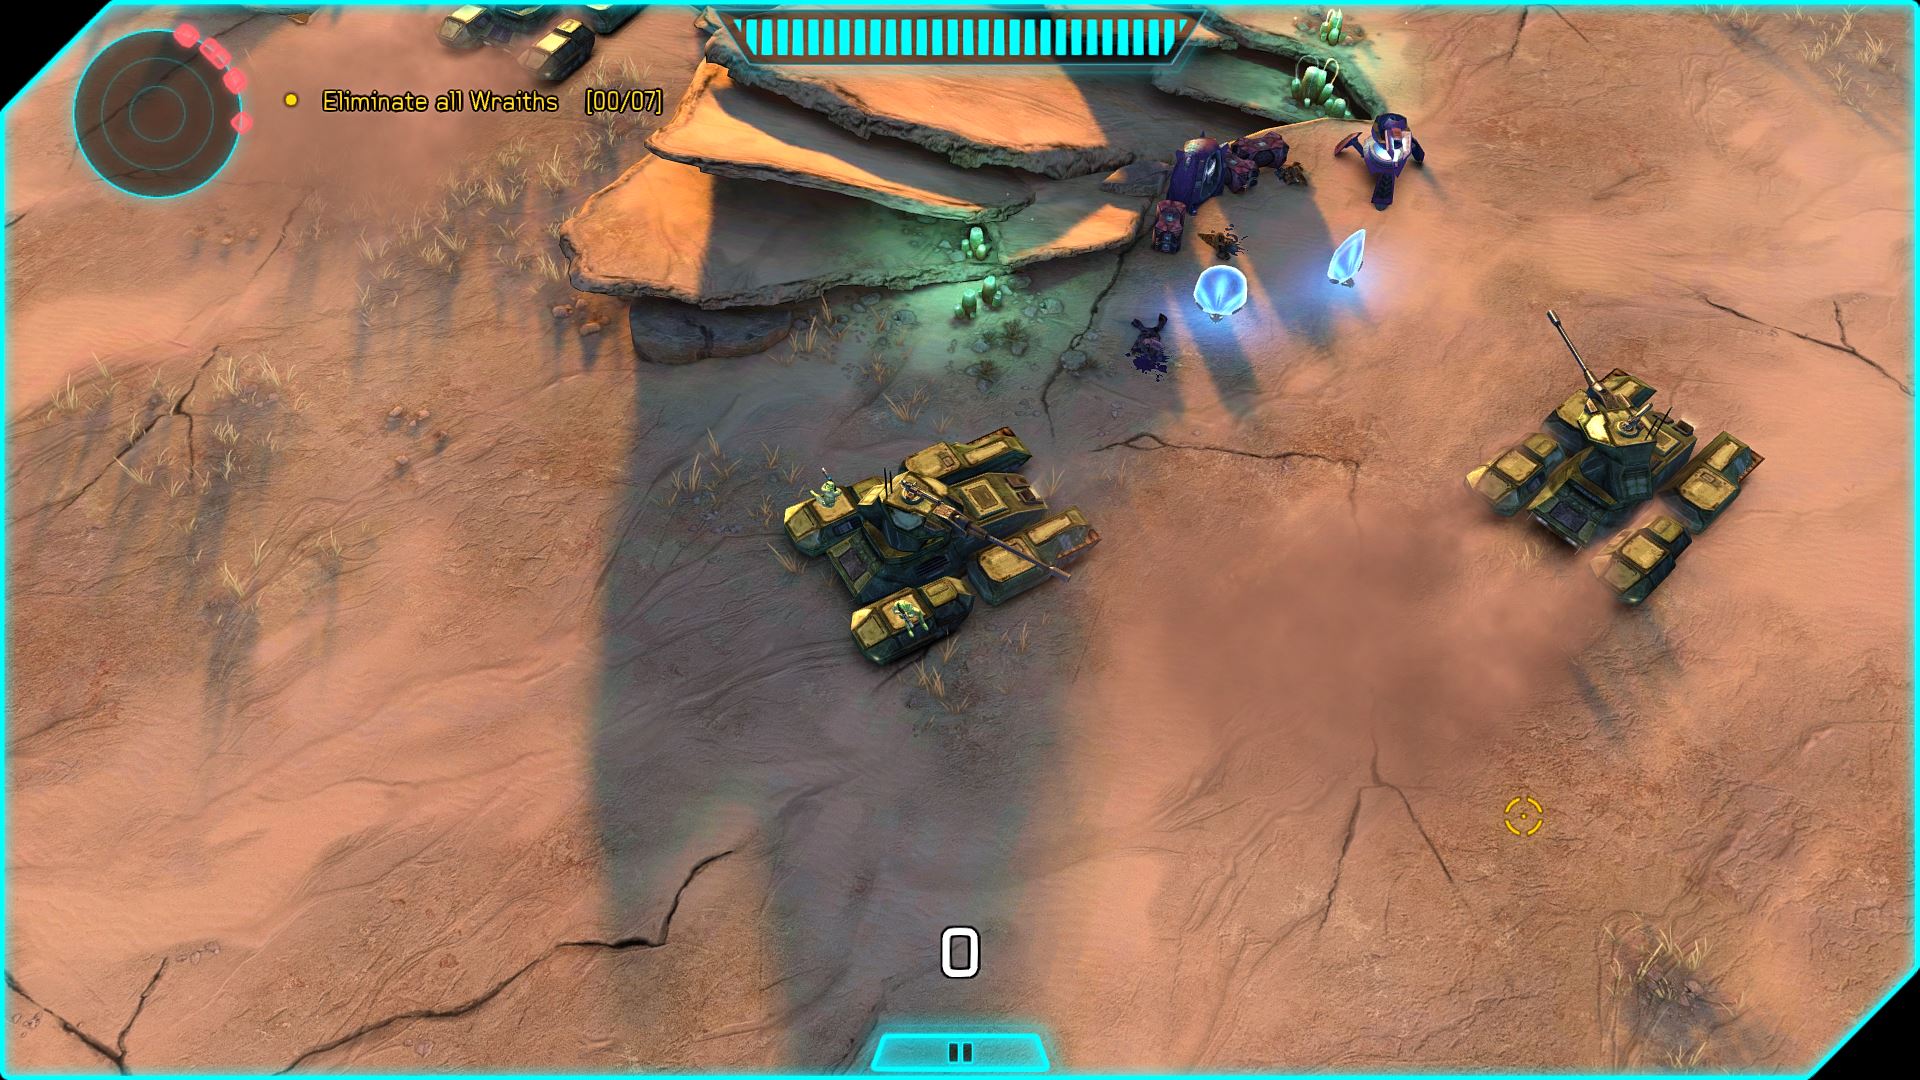 Halo: Spartan Assault Lite free downloads